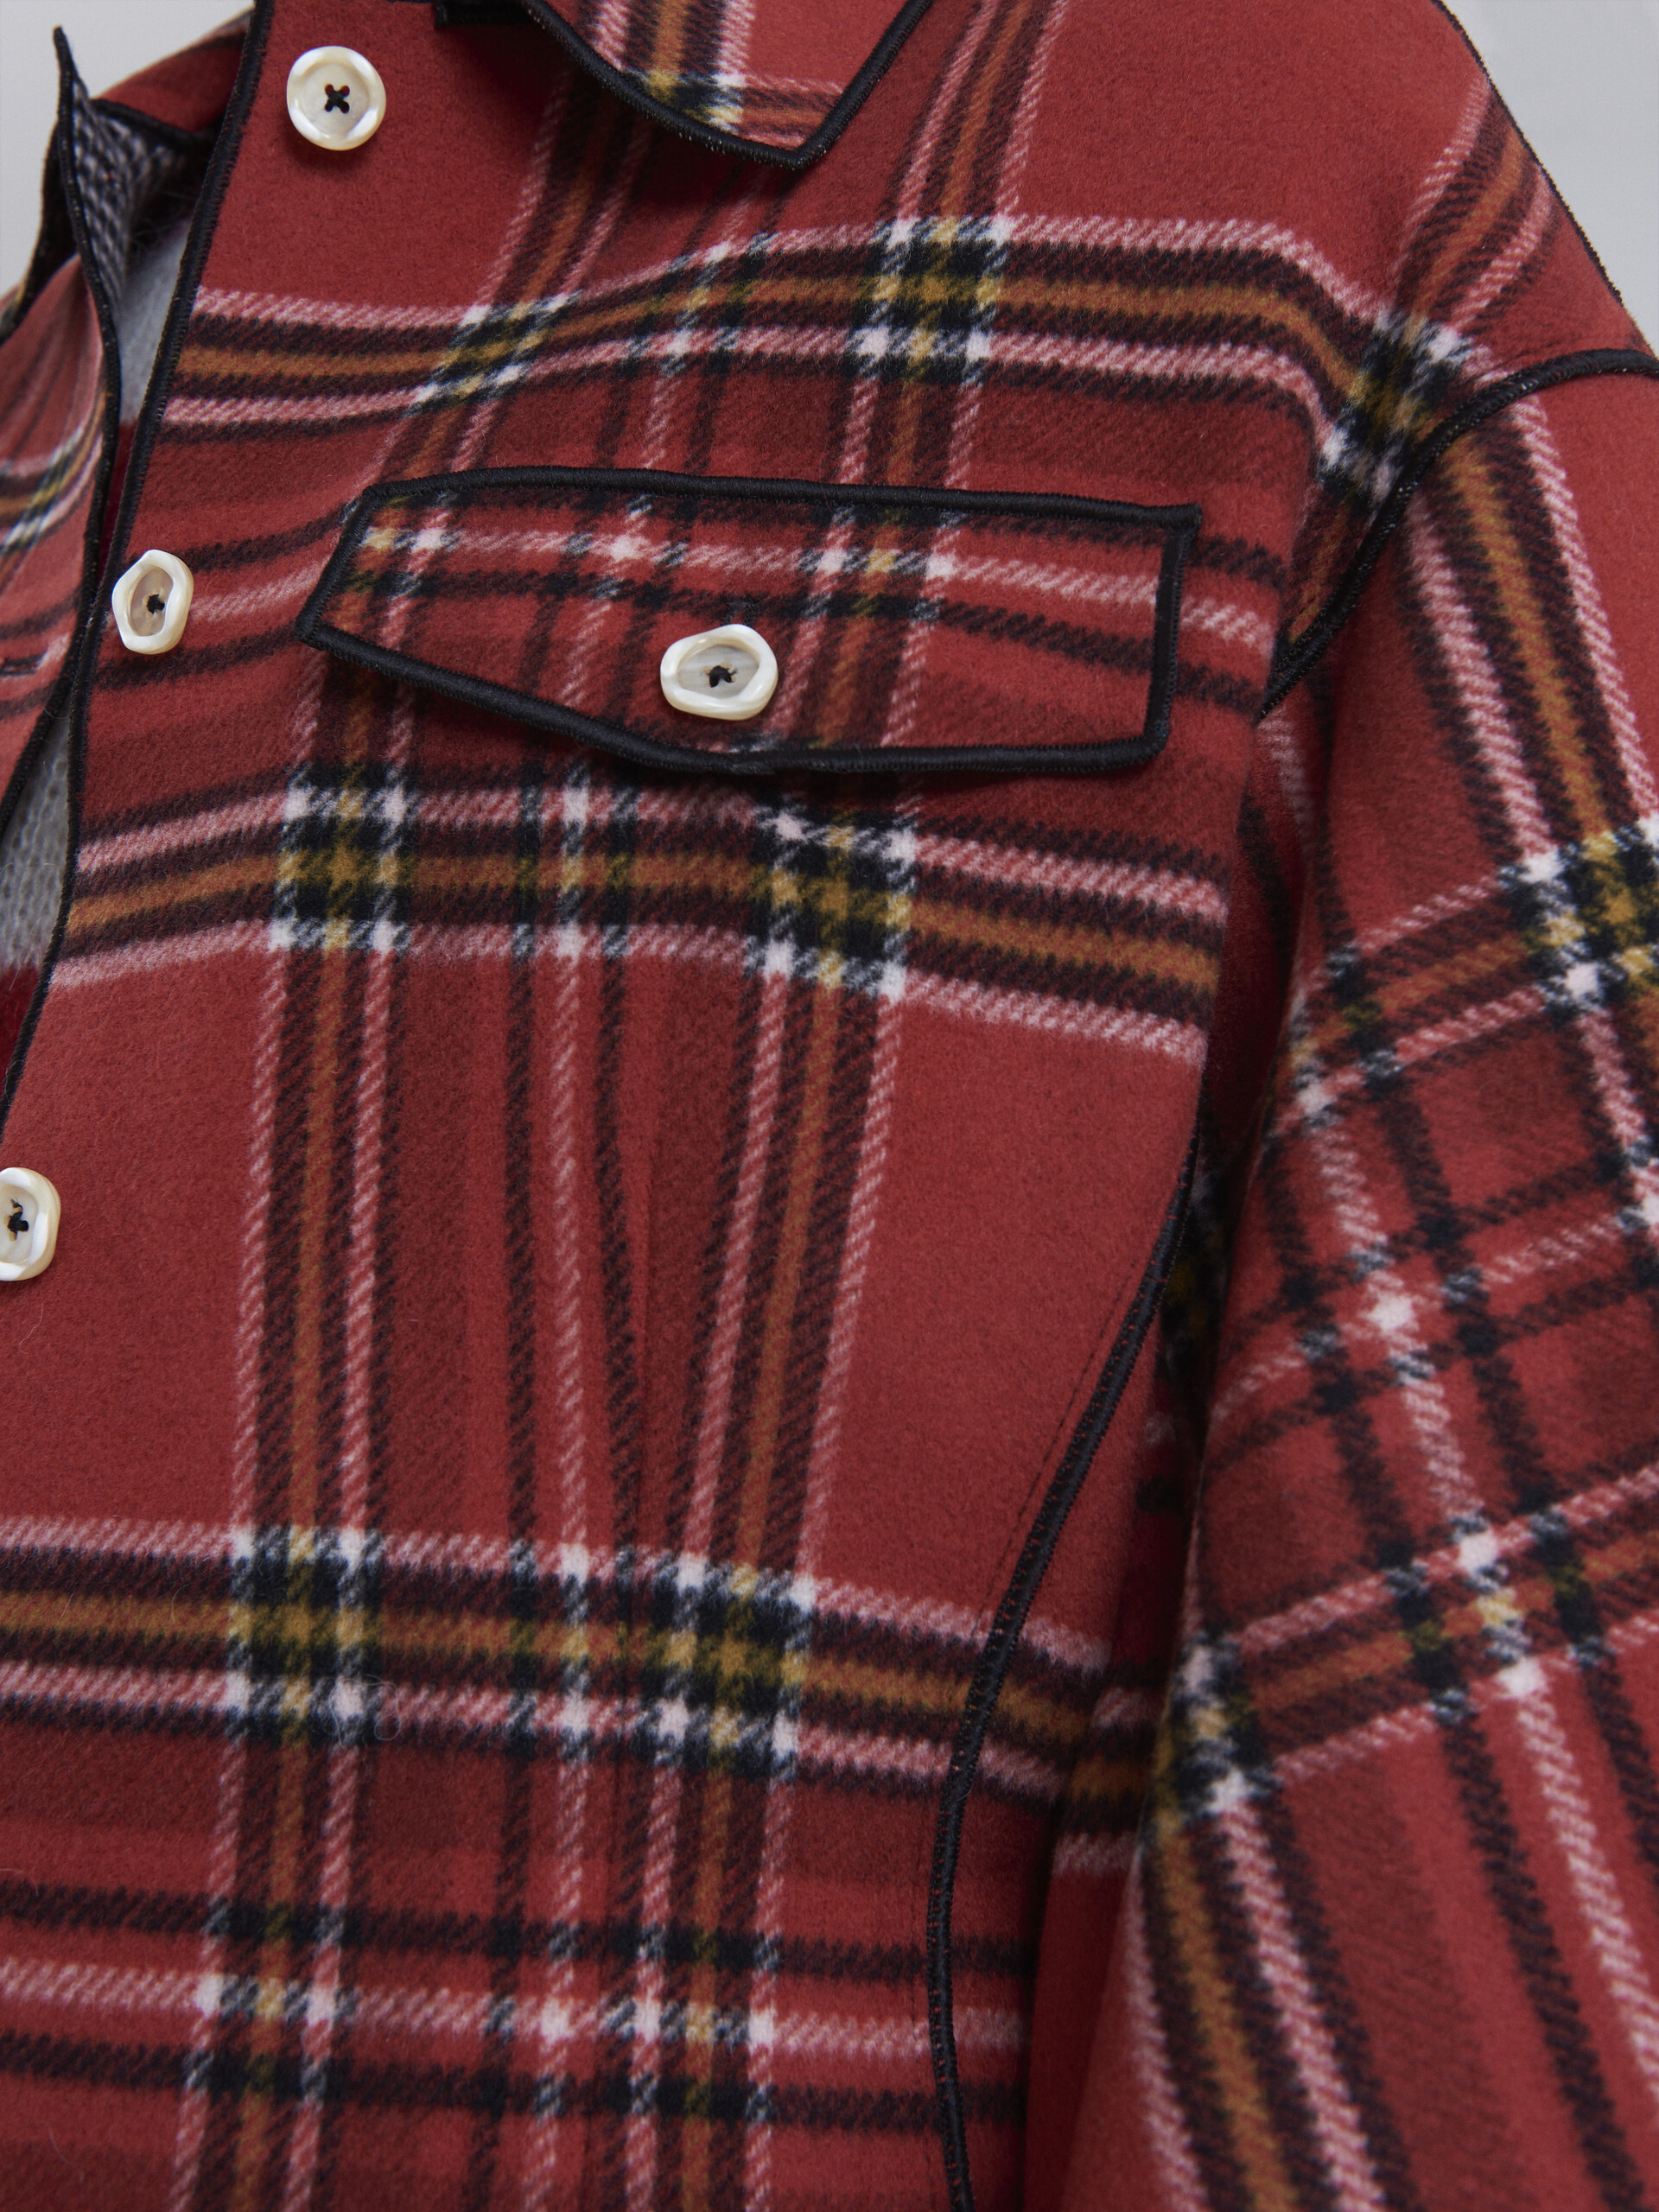 Cappotto in lana melton double face con interno e piping a contrasto - Giacche - Image 5